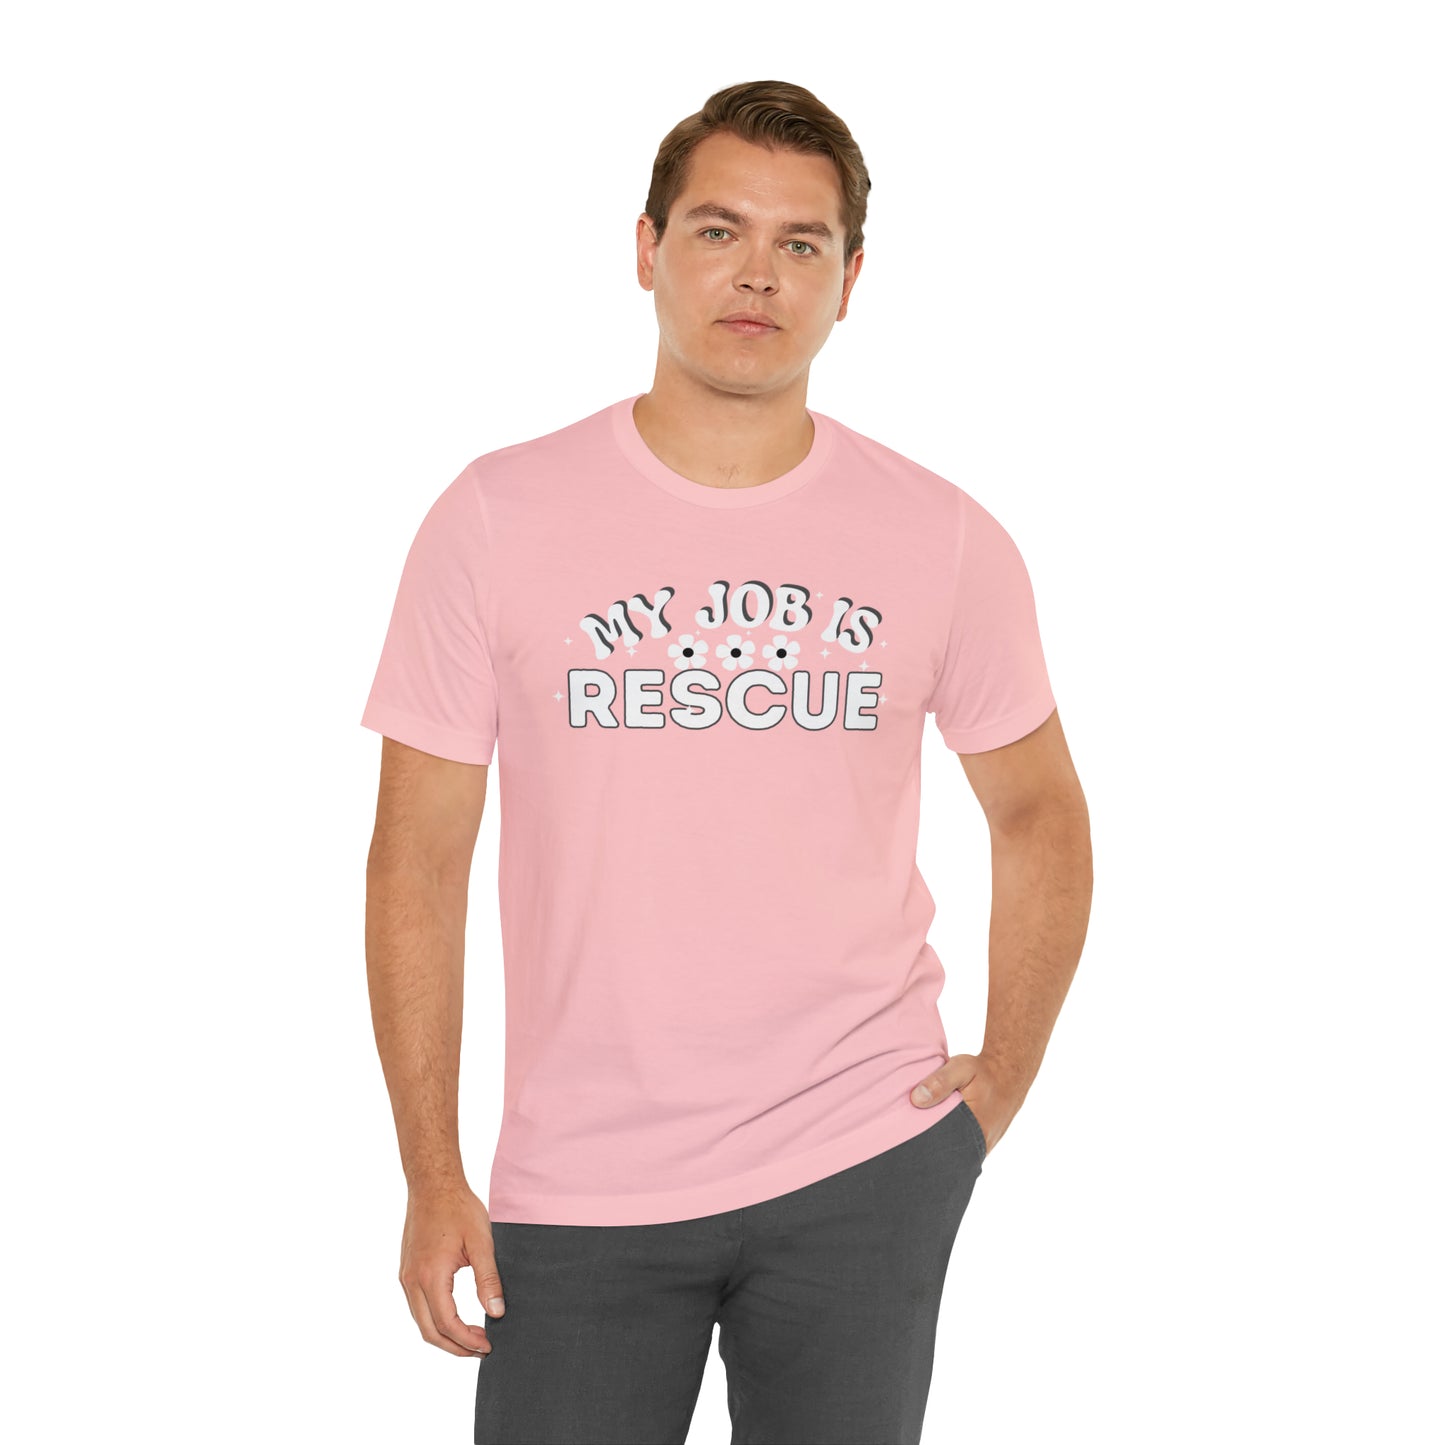 My Job is Rescue Shirt Firefighter Shirt Coast Guard Shirt